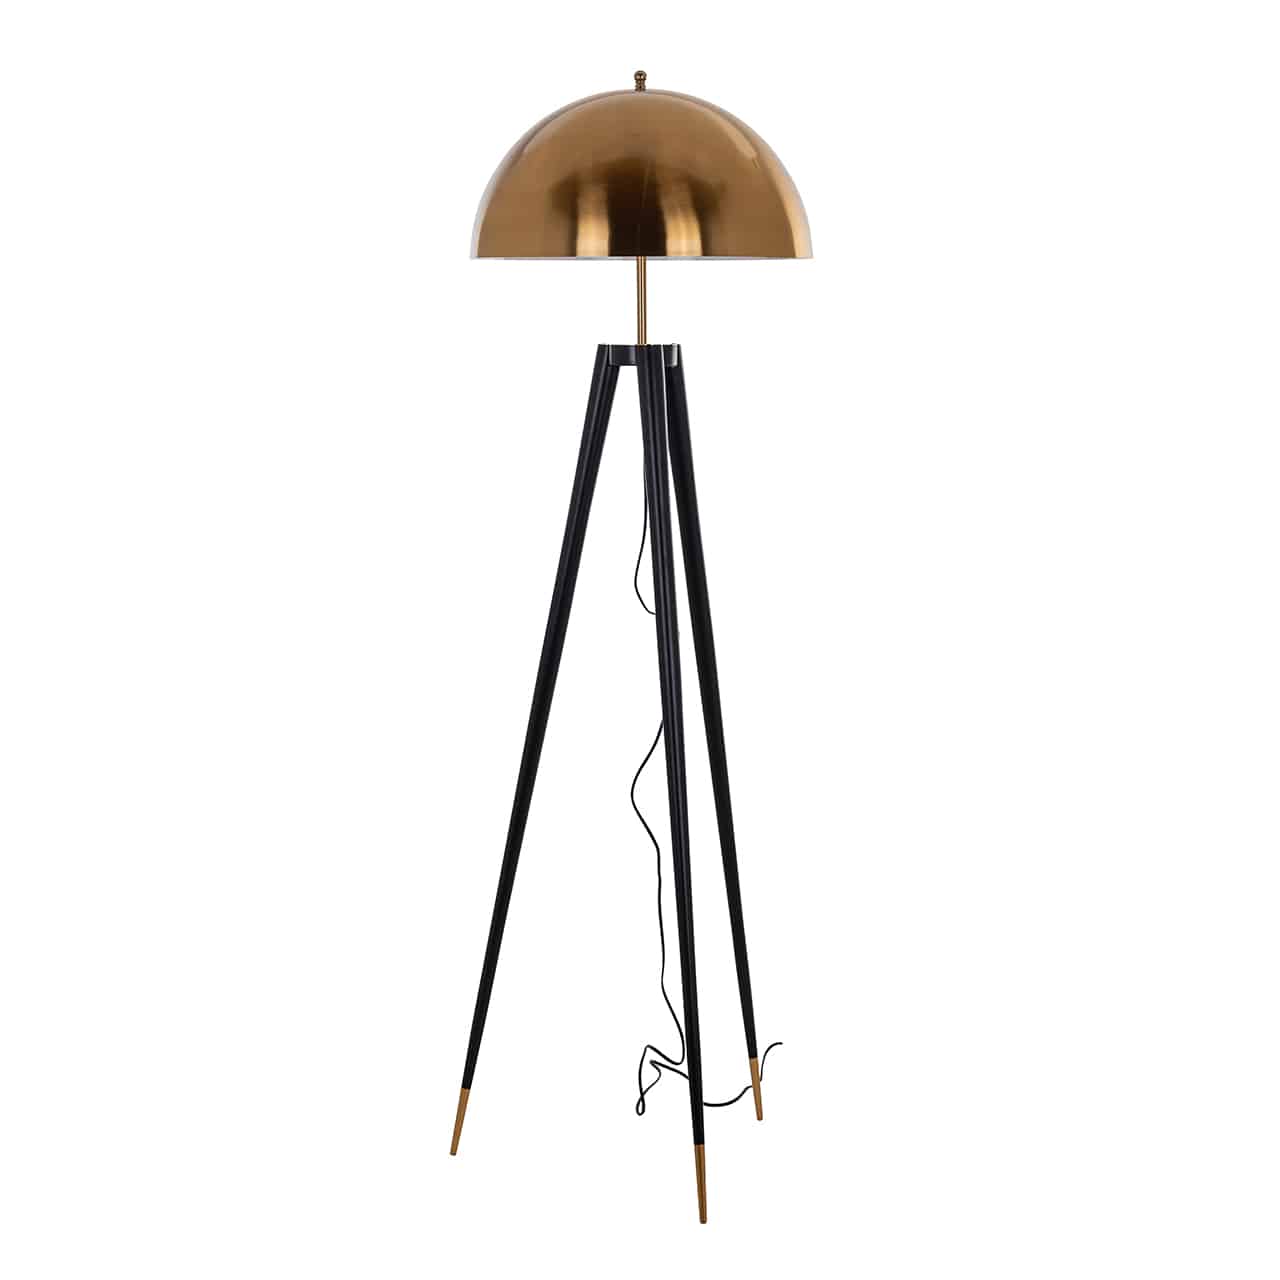 Stehlampe mit einem schwarzen Dreibein als Fuß, unten mit goldenen Kappen; darauf, auf einer dünnen Stange, ein kuppelartiger, goldener Lampenschirm.